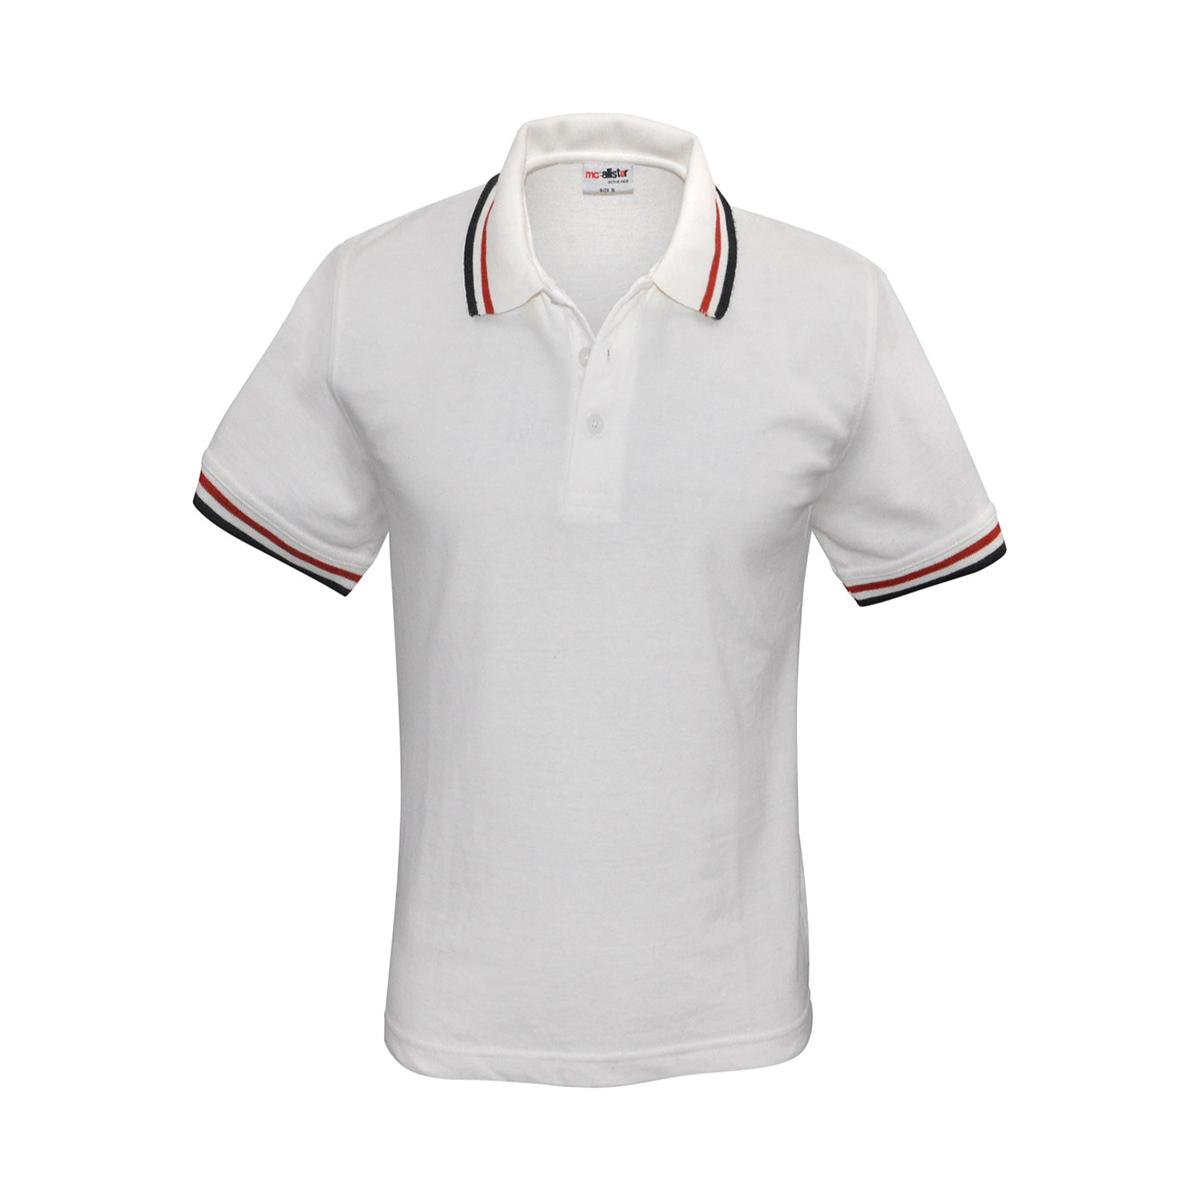 Active Wear - Männer Polo-Shirt - weiß - rot - schwarz